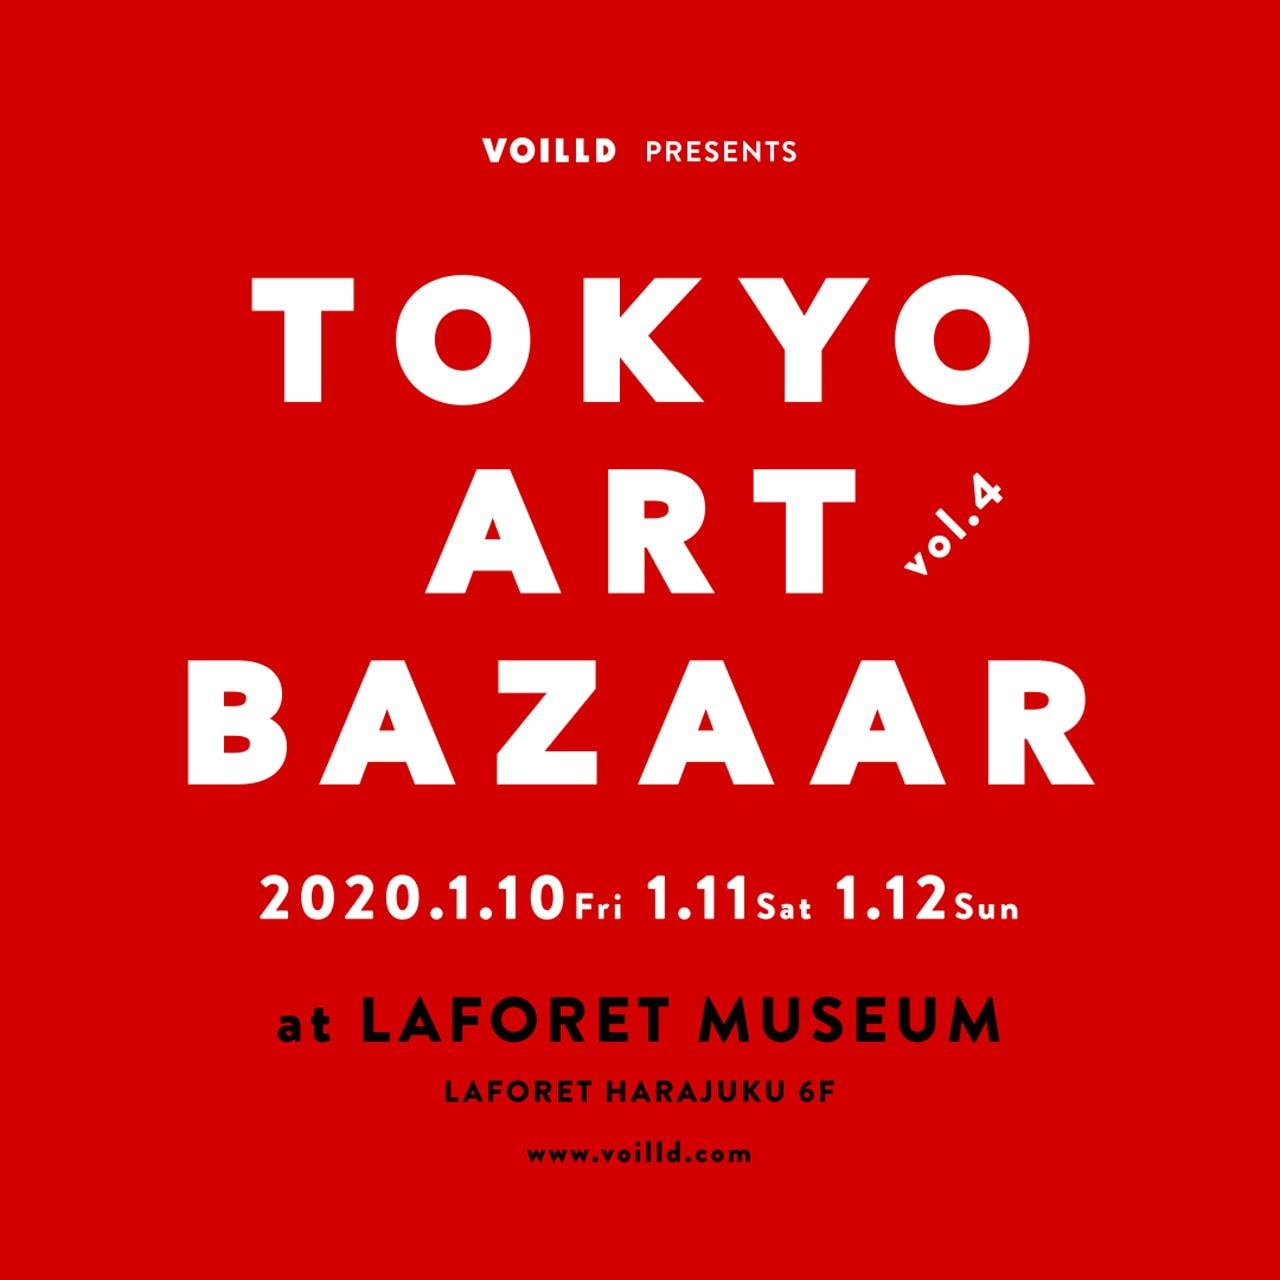 ラフォーレミュージアム原宿にクリエイターが集結！TOKYO ART BAZAAR開催